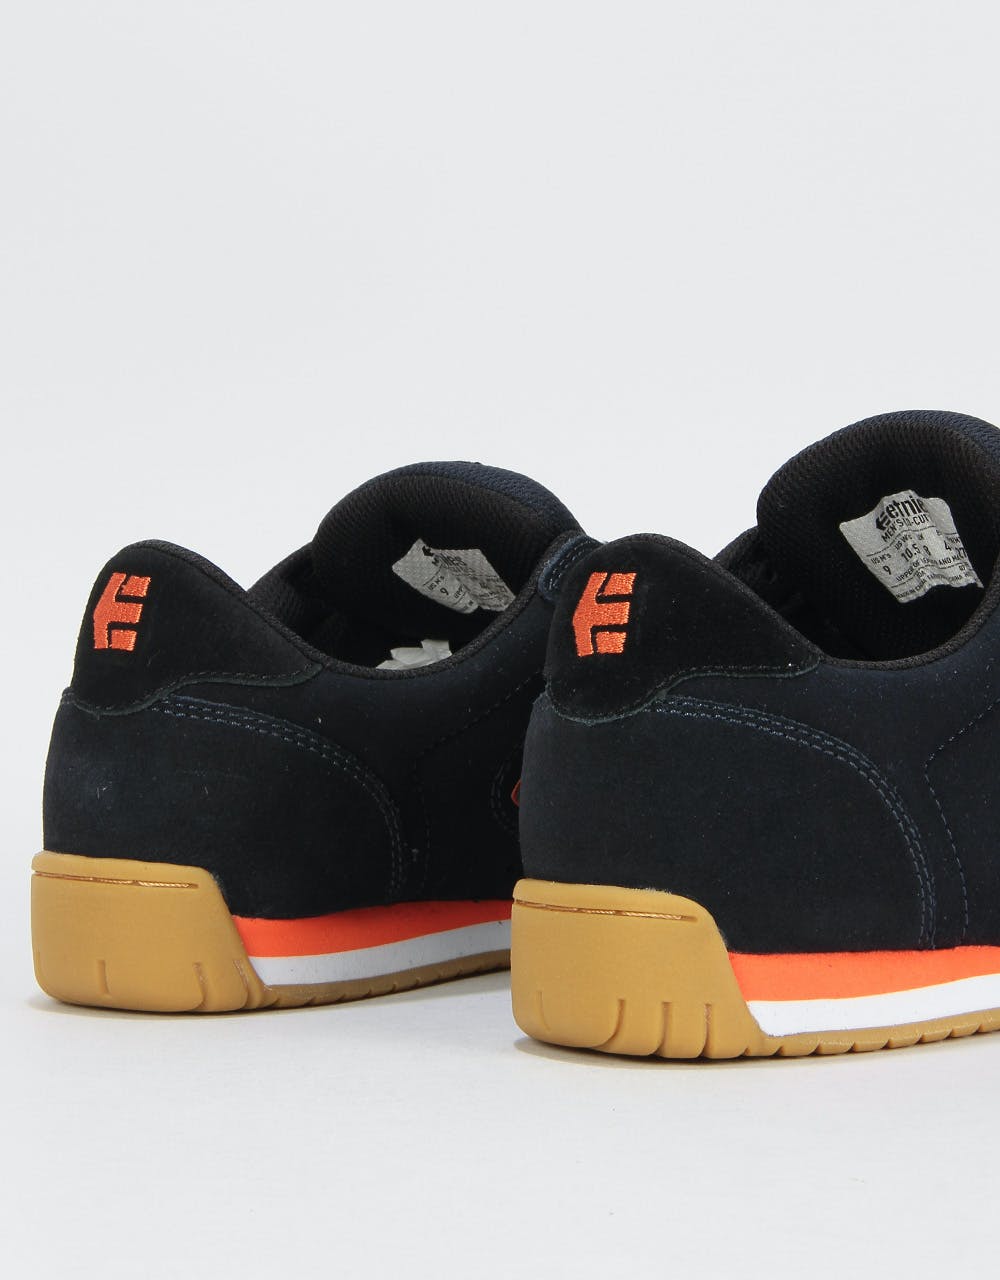 Etnies Lo-Cut II LS Skate Shoes - Navy/Black/Orange